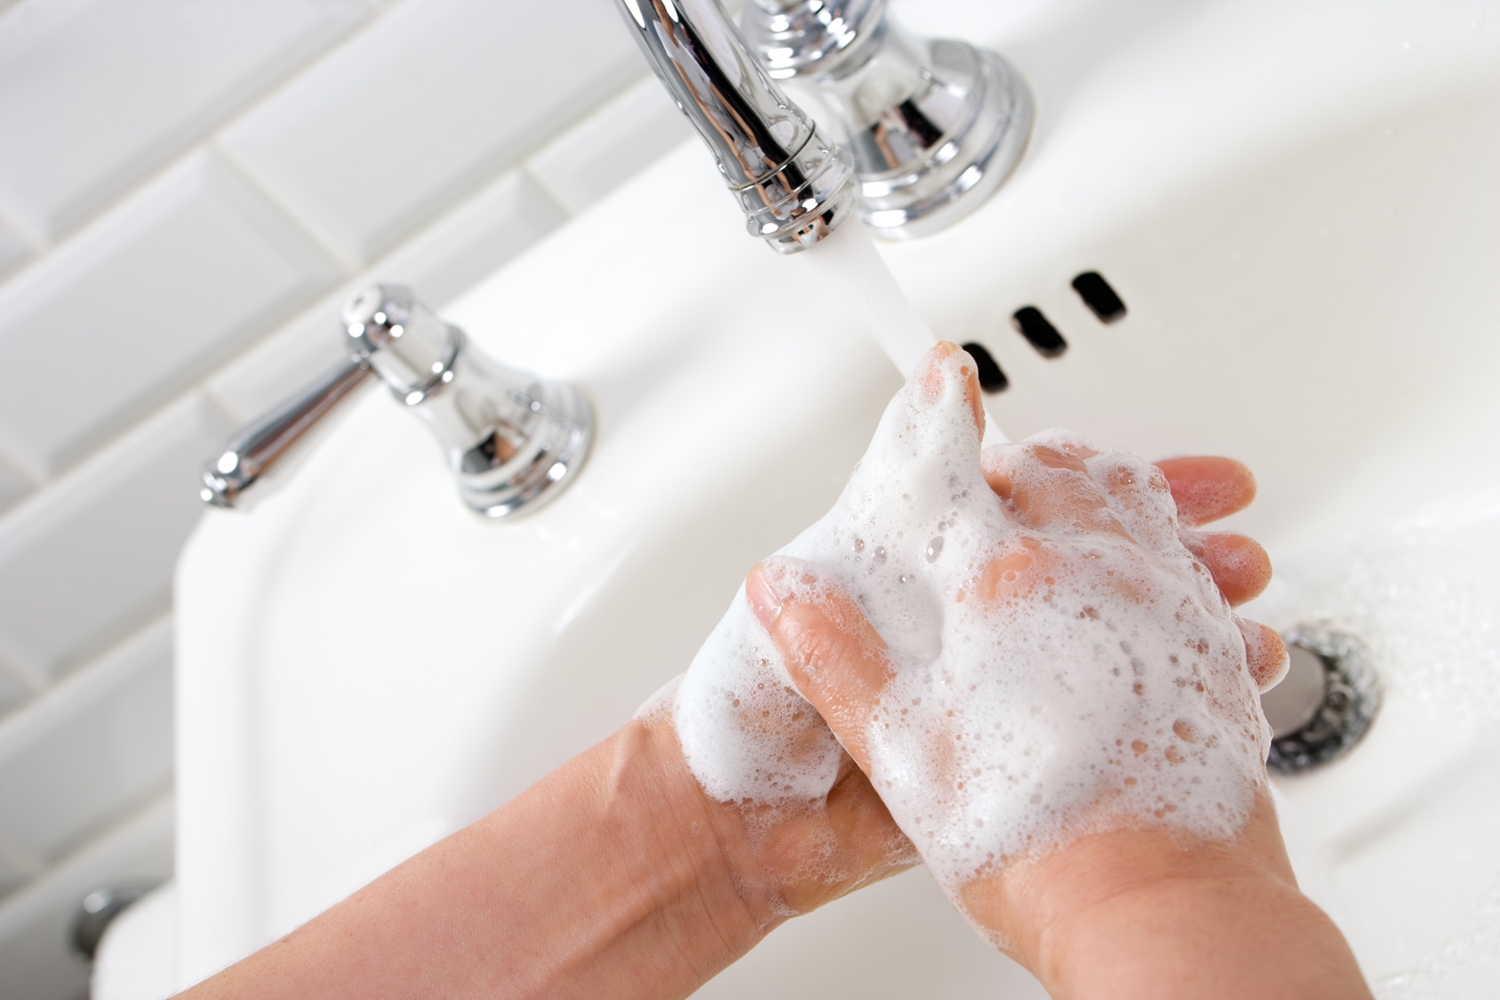 Image of Handwashing